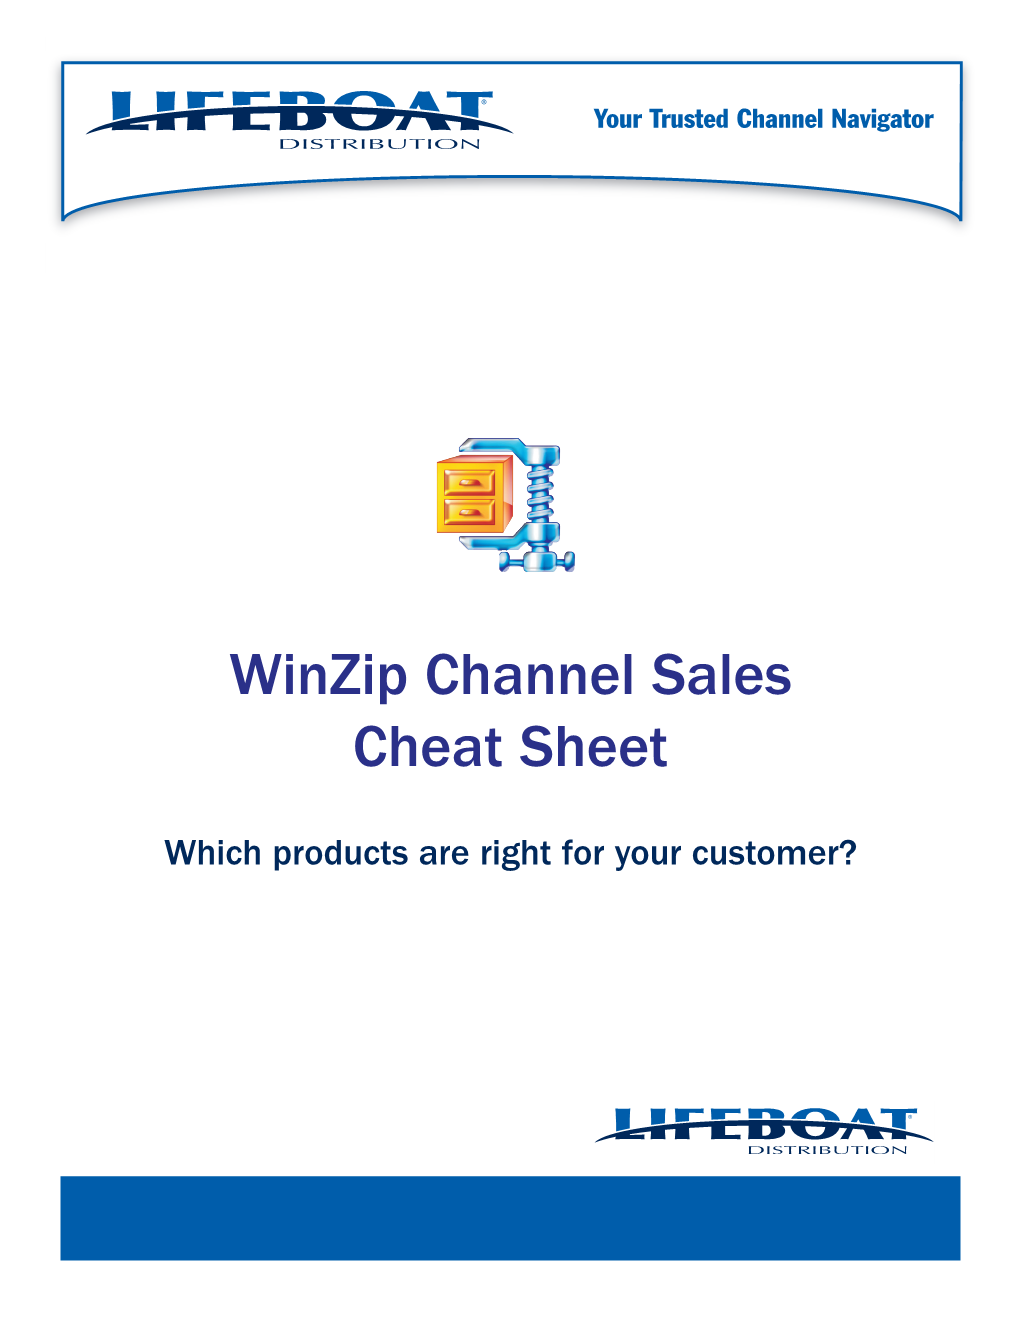 Winzip Channel Sales Cheat Sheet